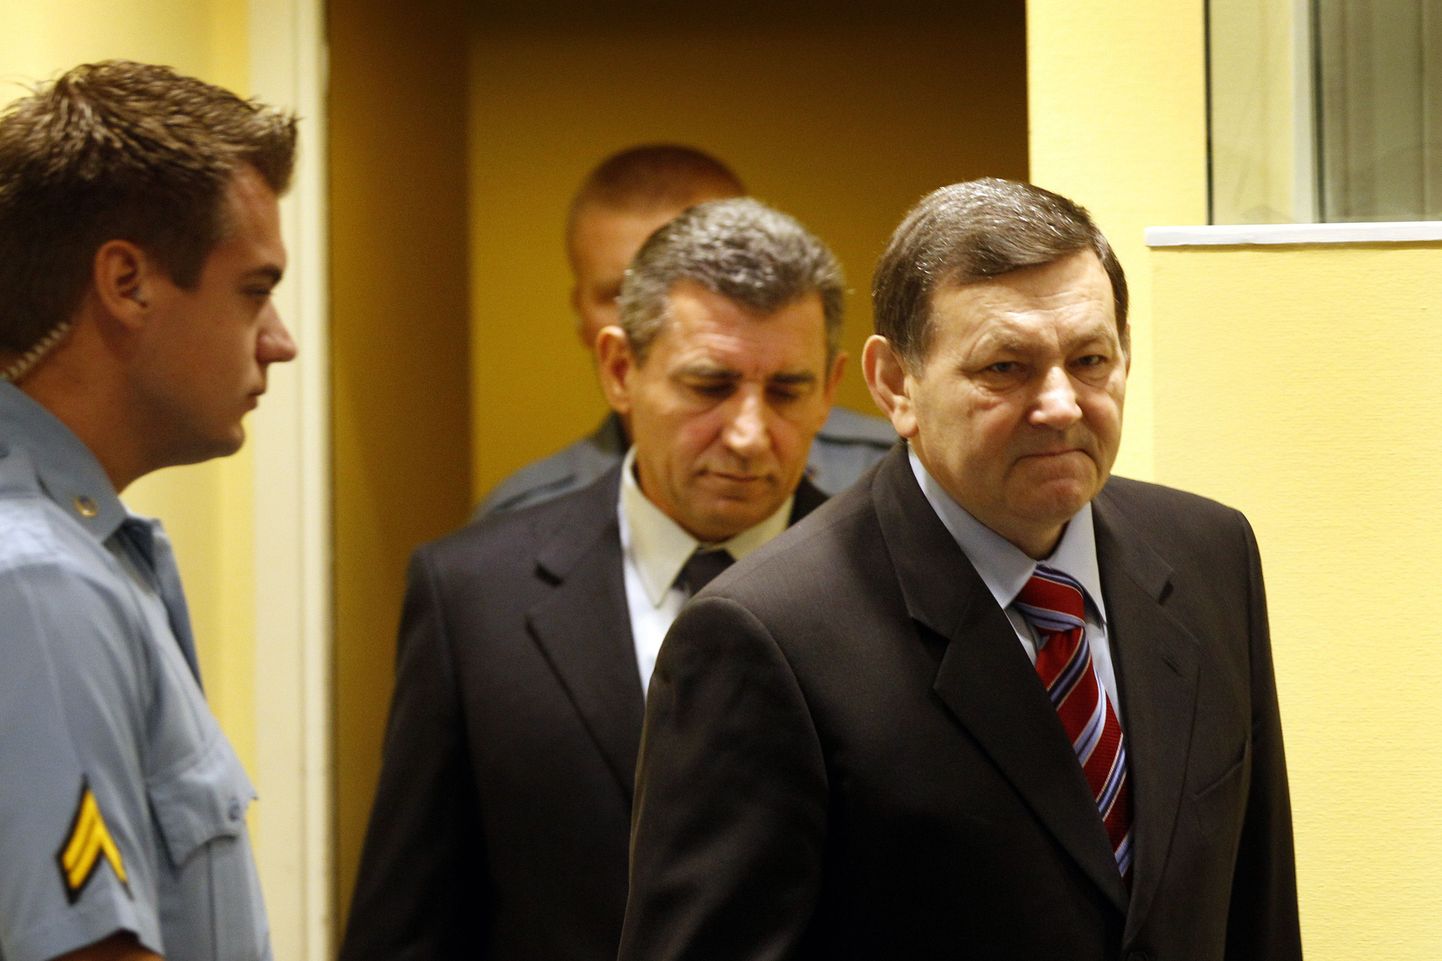 Ante Gotovina ja Mladen Markač (paremal) sisenevad kohtusaali Haagis.